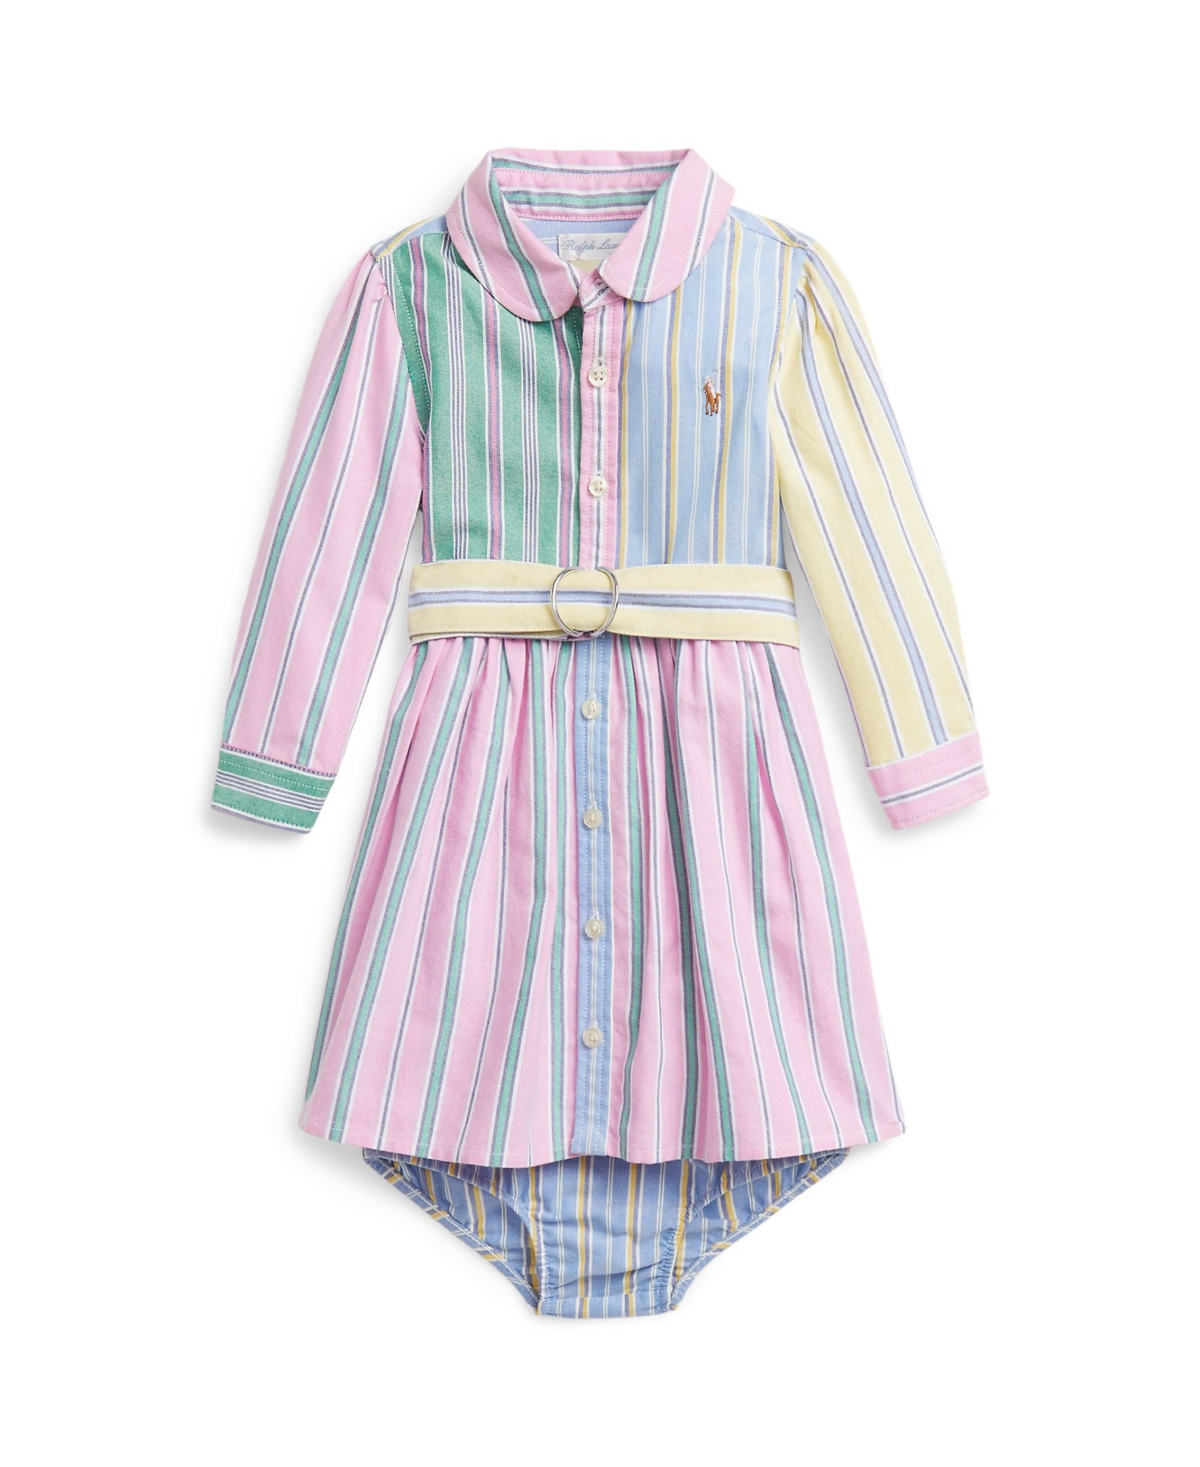 Polo Ralph Lauren Baby Girls Belted Oxford Fun Shirt Dress In Funshirt